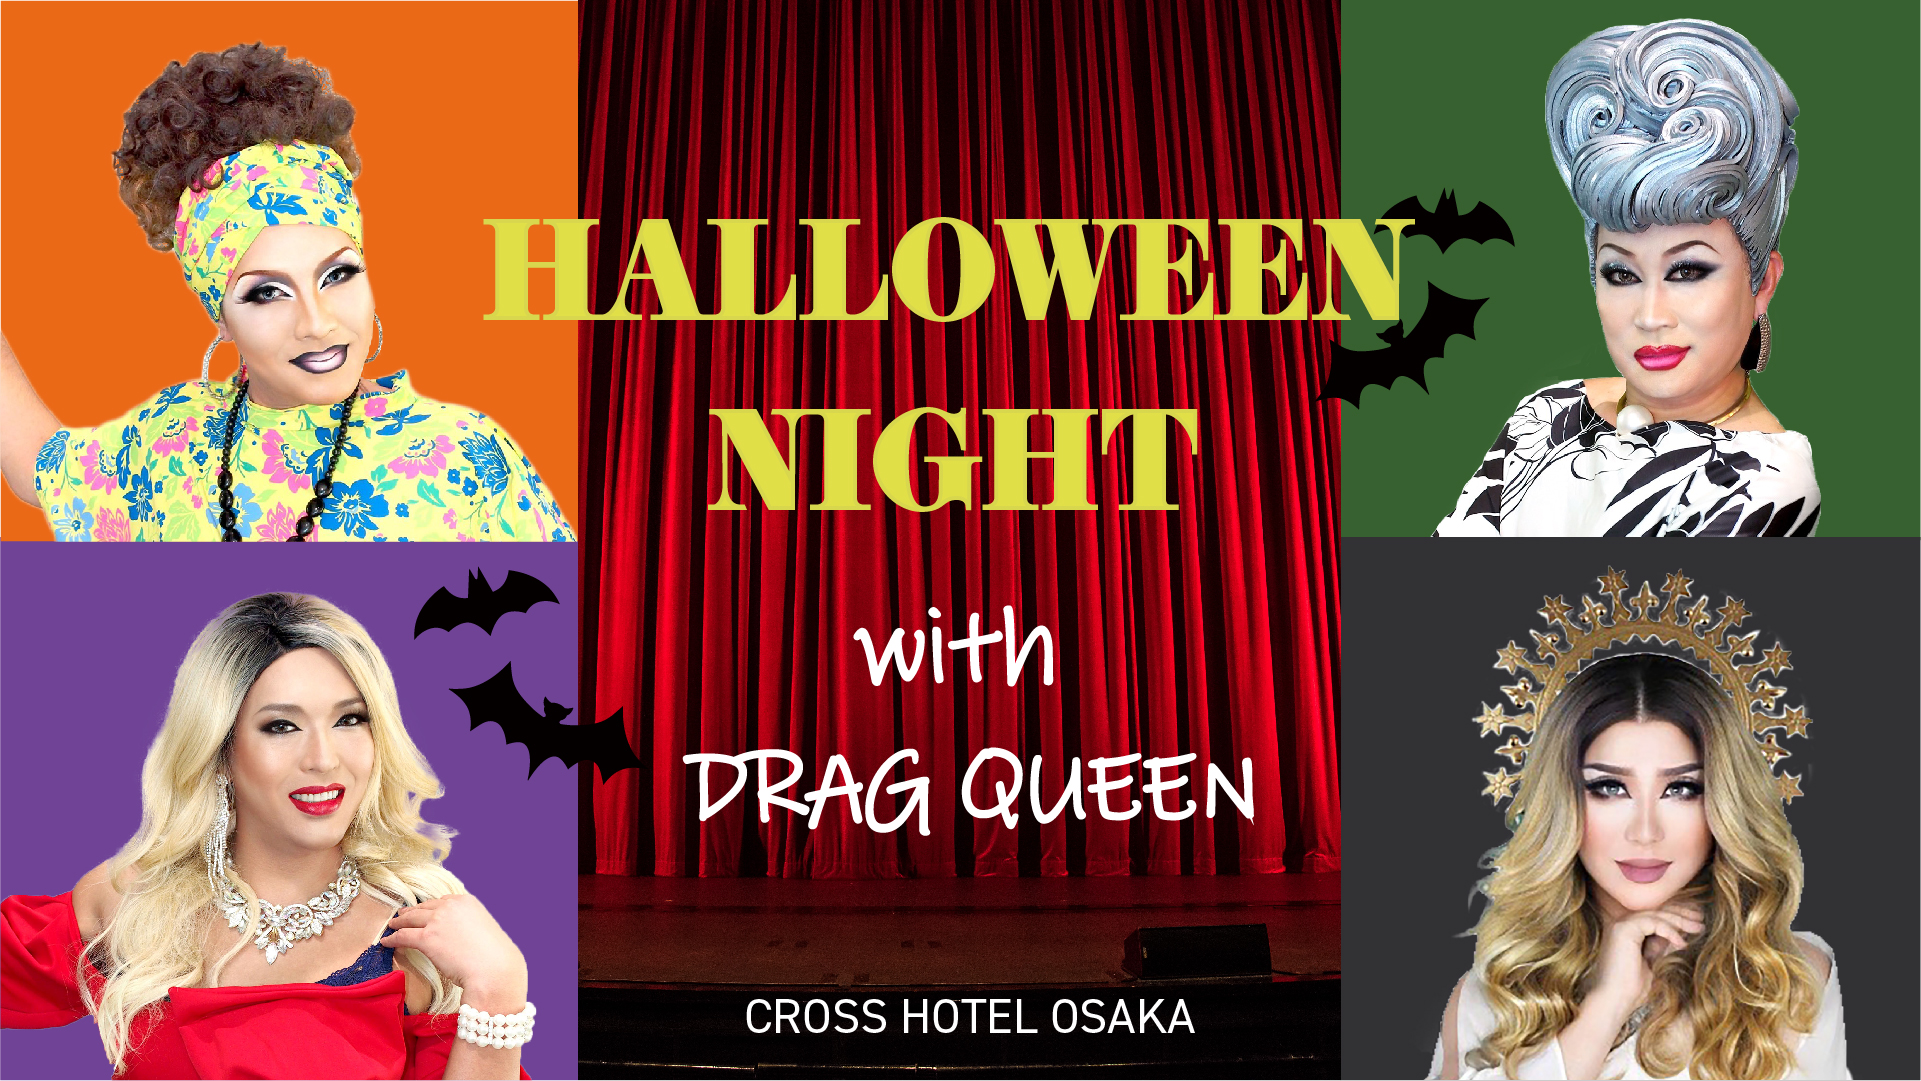 【終了】ゴージャスなショーでハロウィンを楽しむ「Halloween Night with Drag Queen」開催